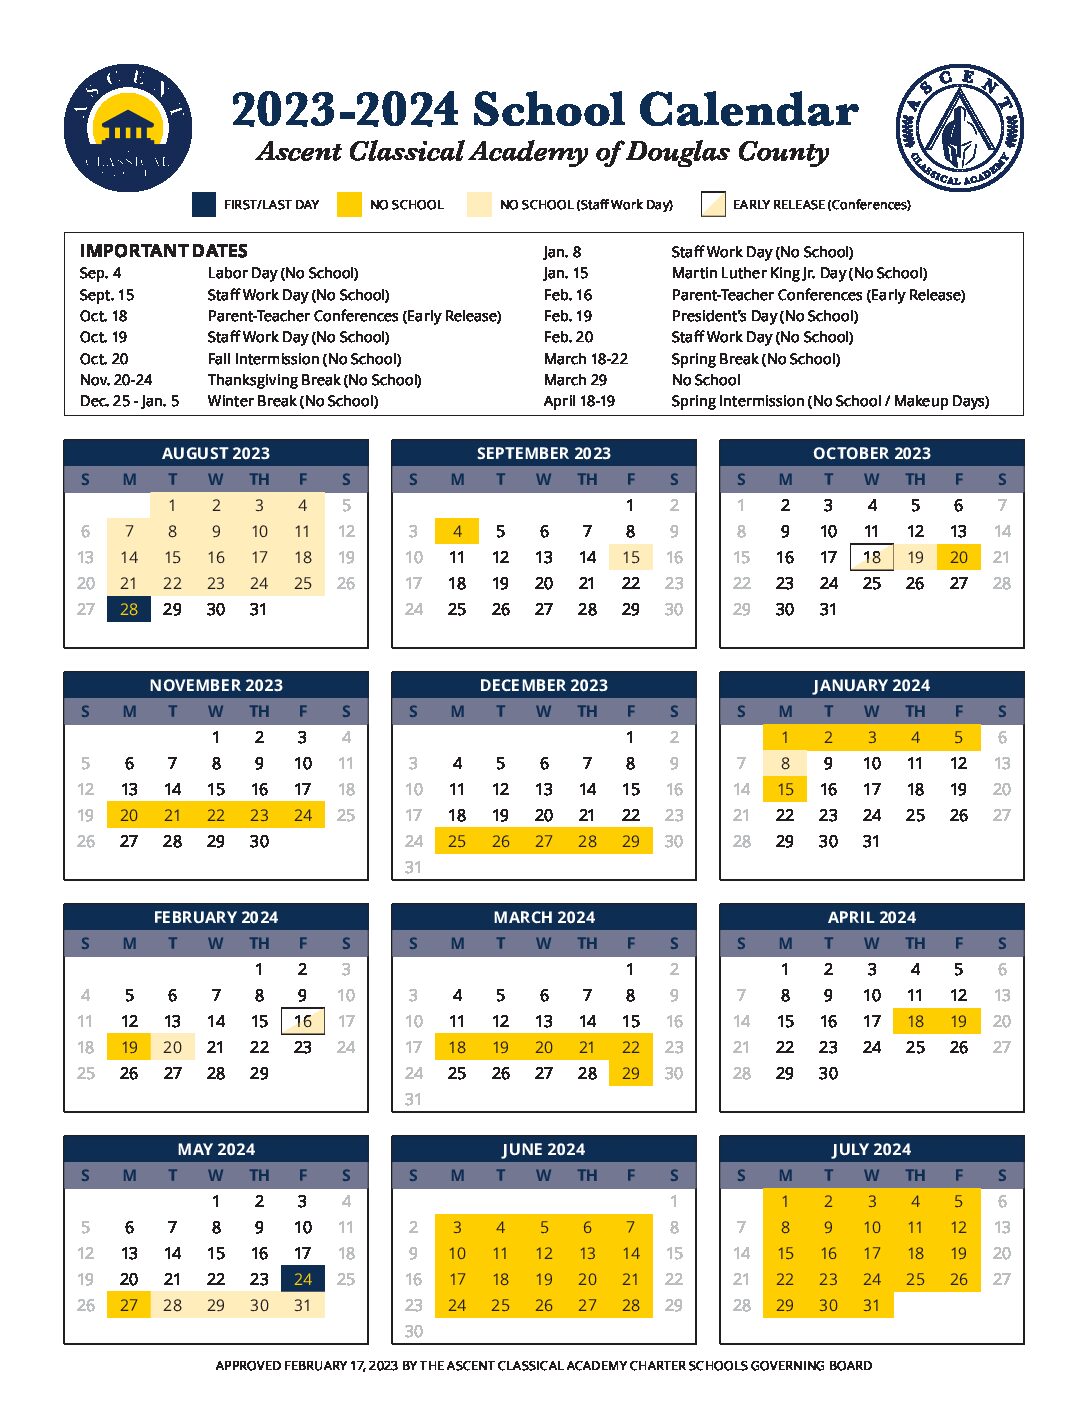 2022-2023 Academic Calendar for ACADC